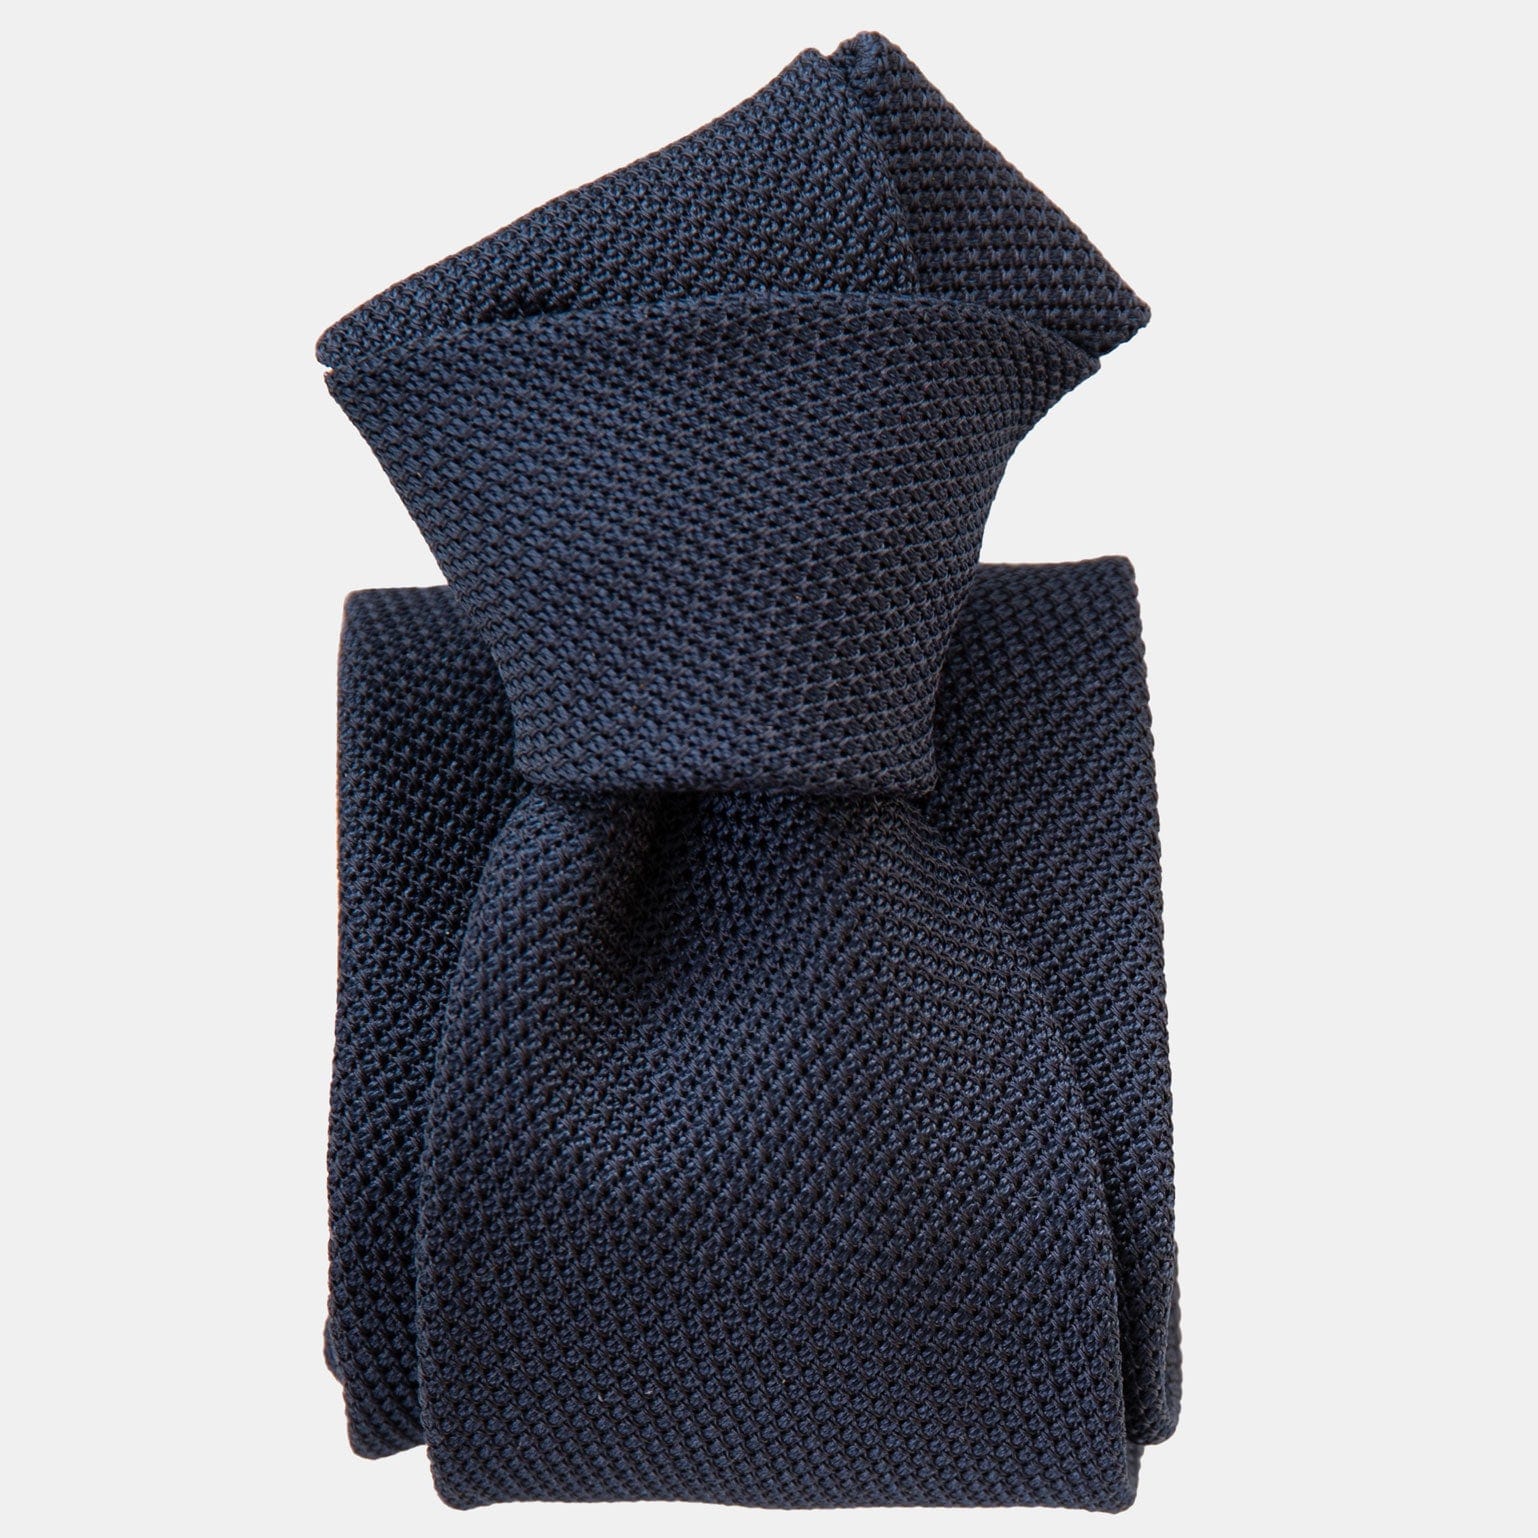 Dark Navy Grenadine Tie - 100% Silk Made in Italy